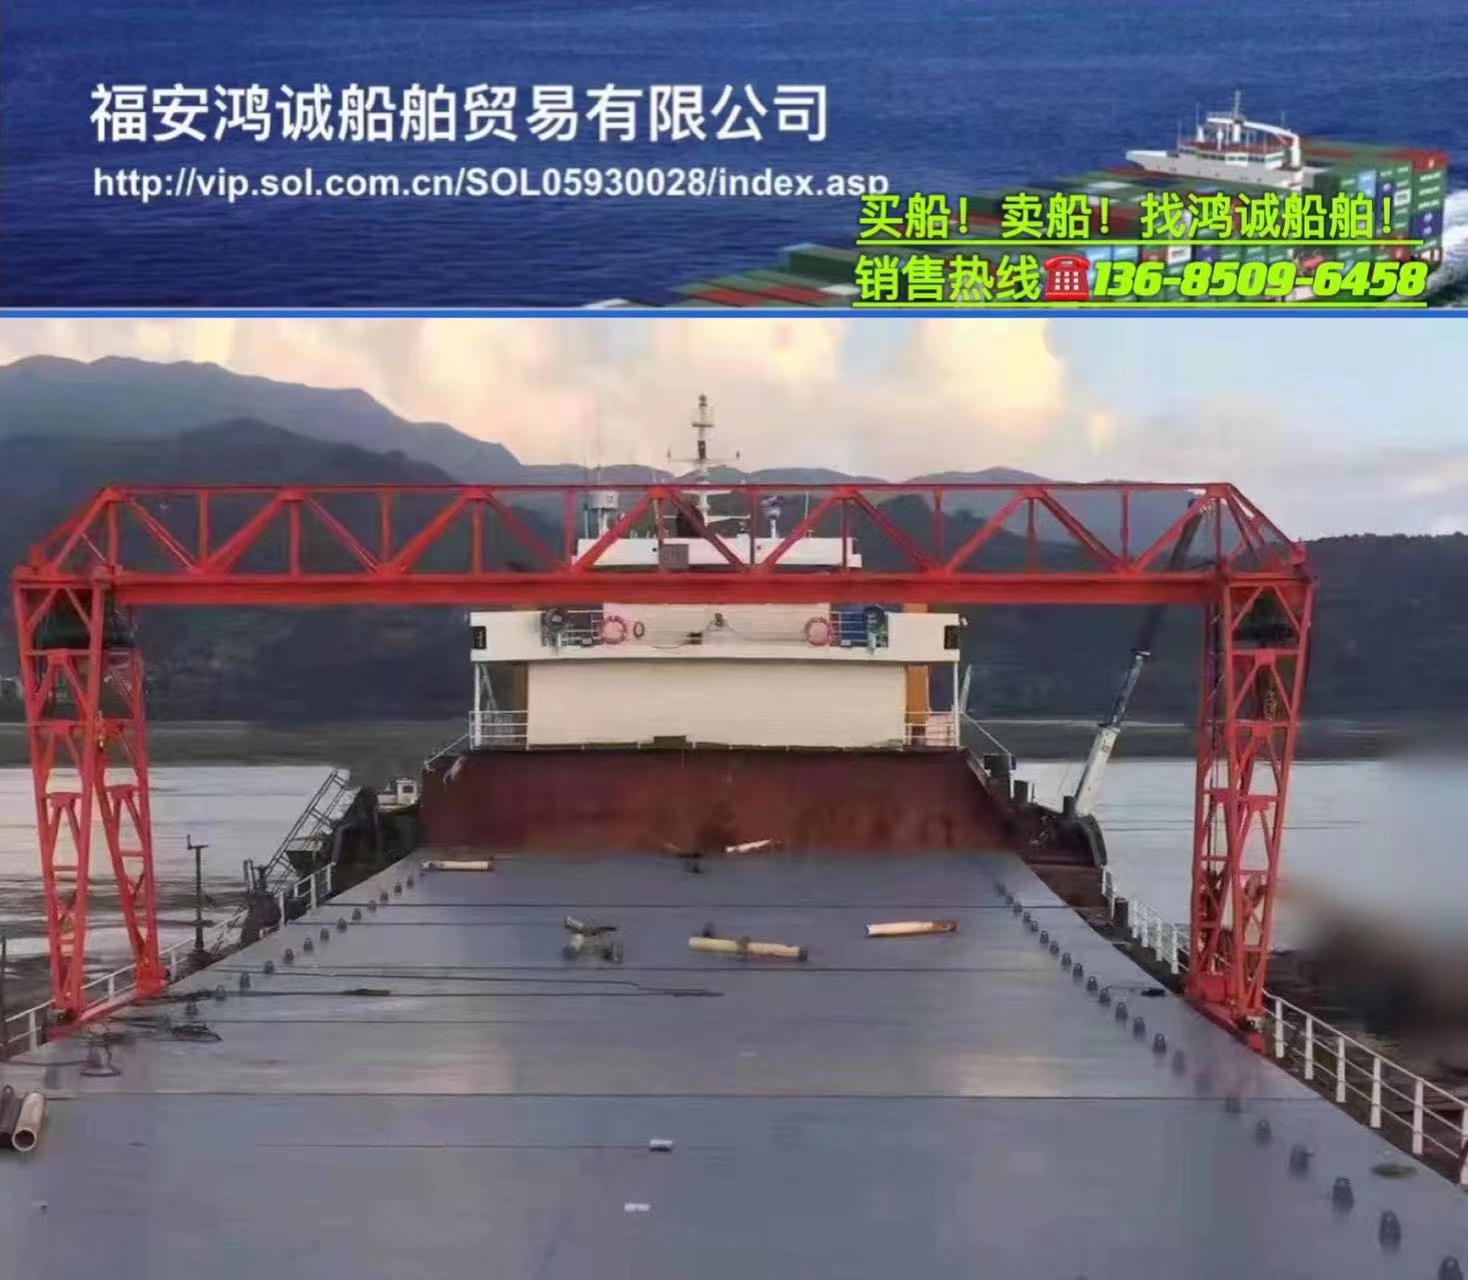 出售实载5500吨沿海自卸砂船： 2016年7月广东惠州建造/